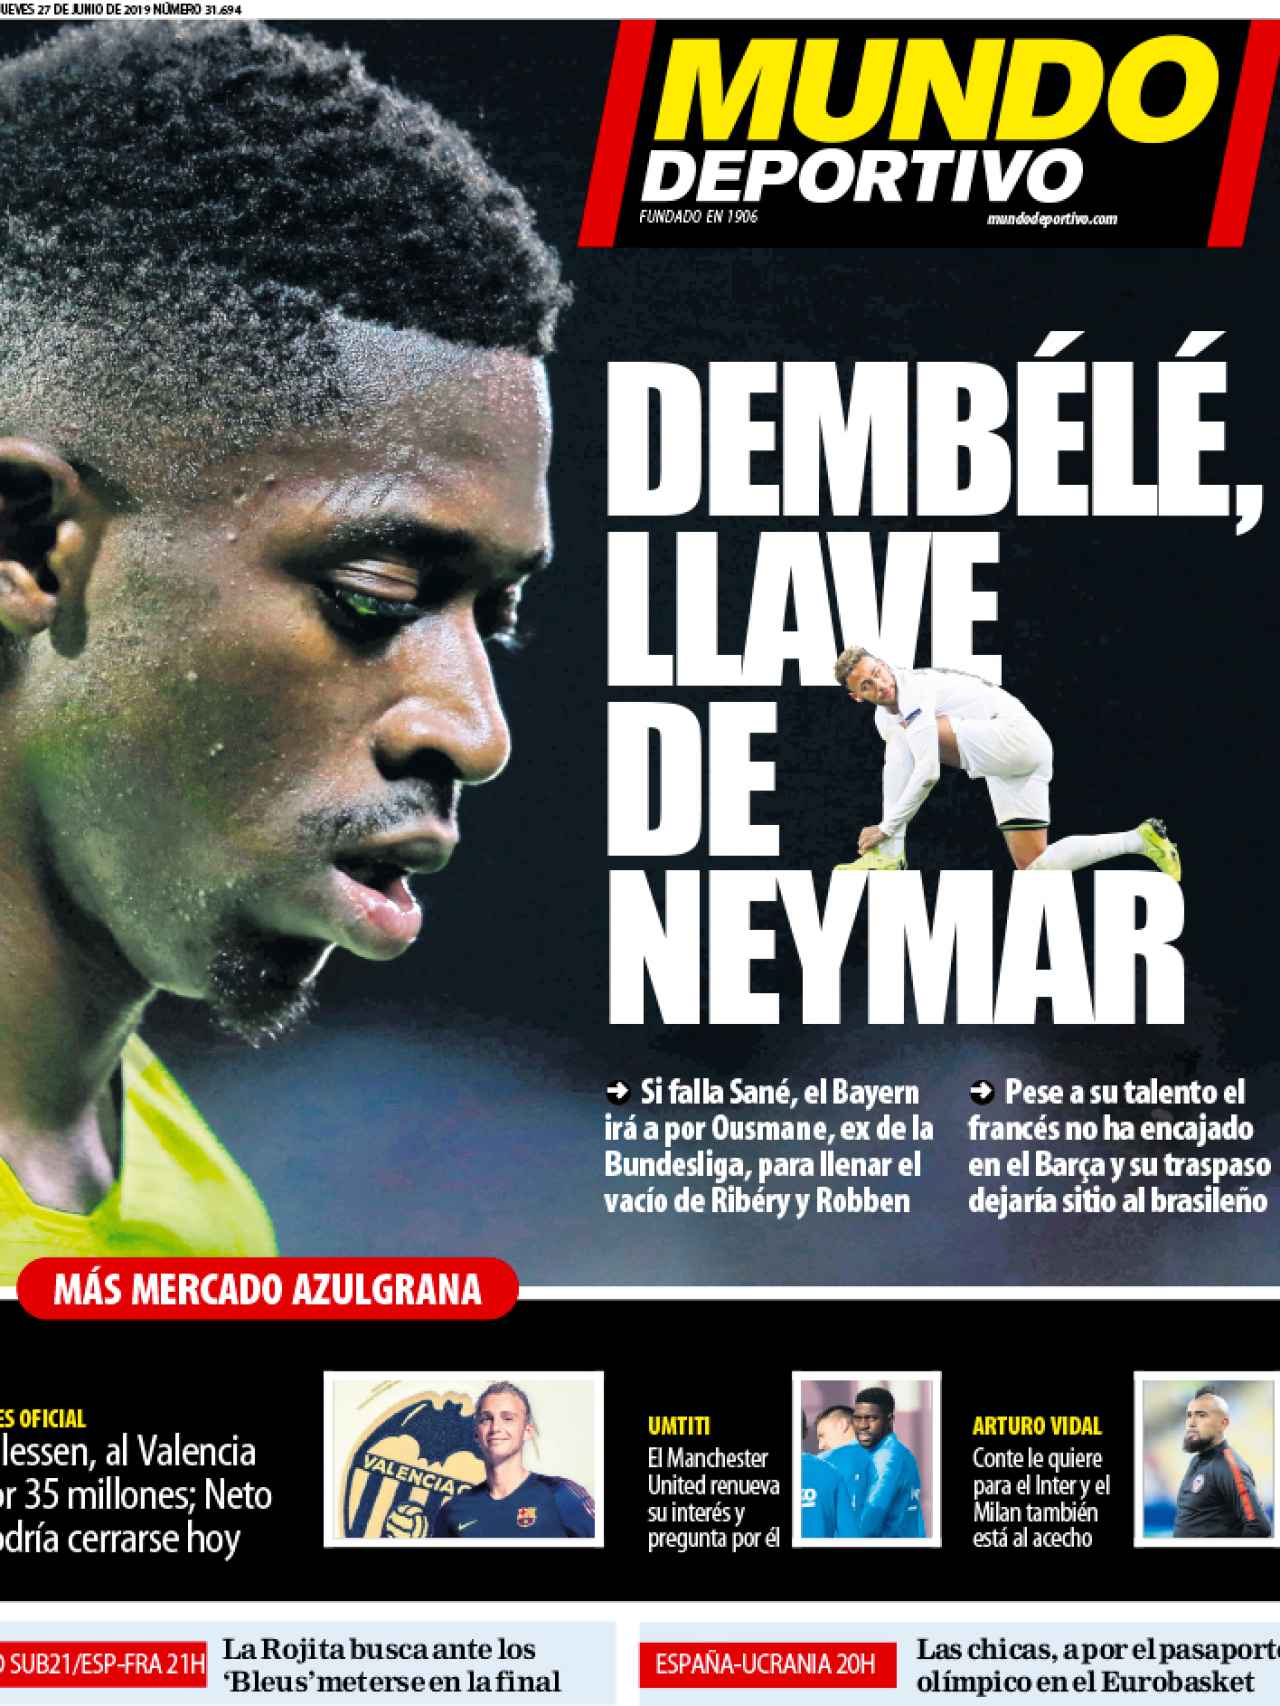 La portada del diario Mundo Deportivo (27/06/2019)